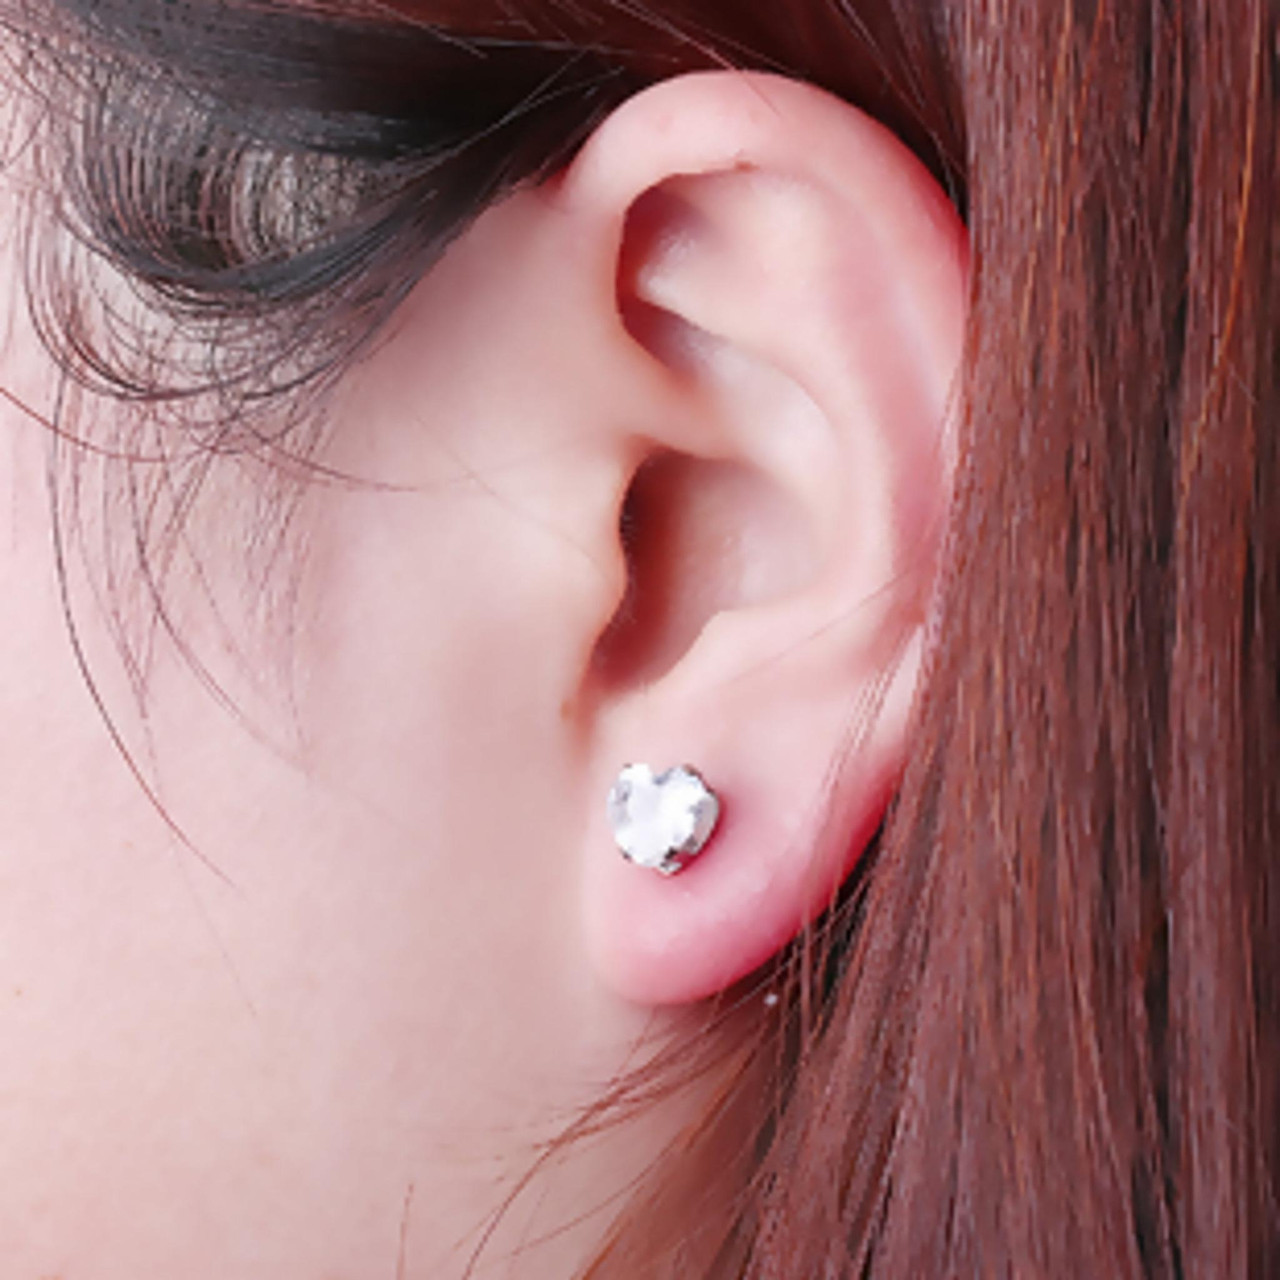 Cubic Zirconia Heart Stud Earrings